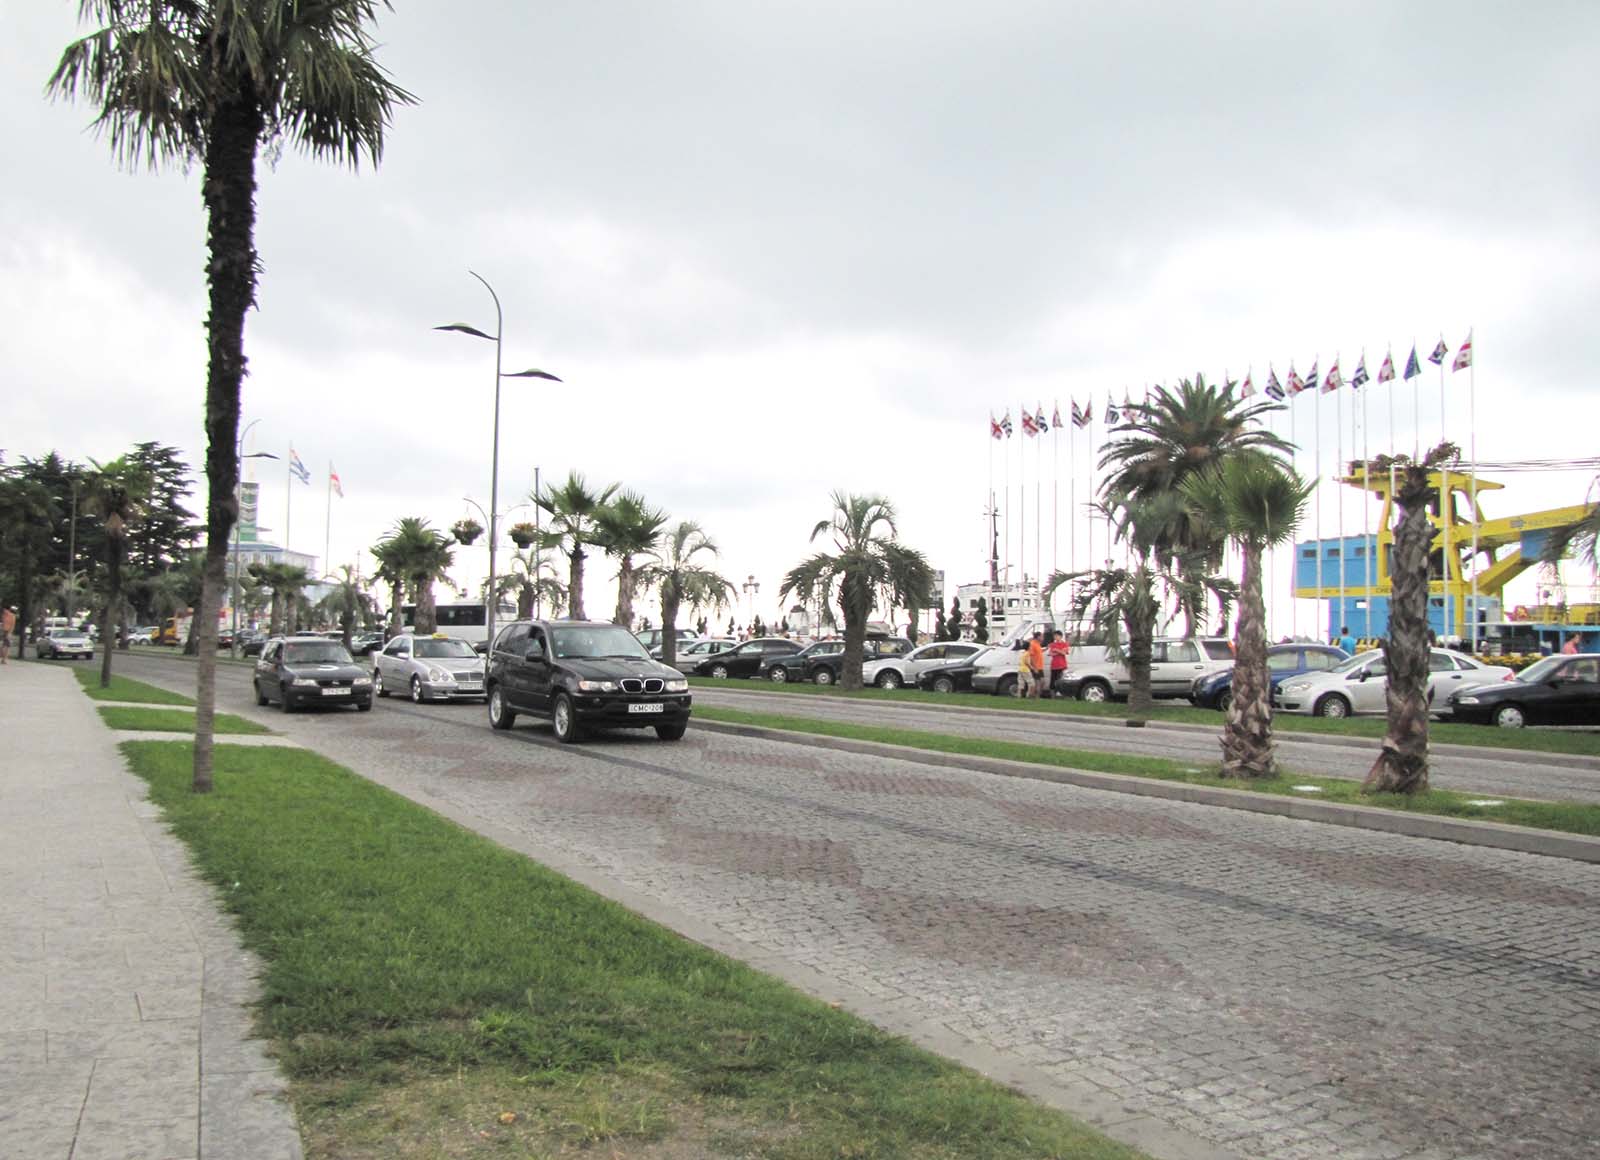 Streets of Batumi, Adjara, Georgia